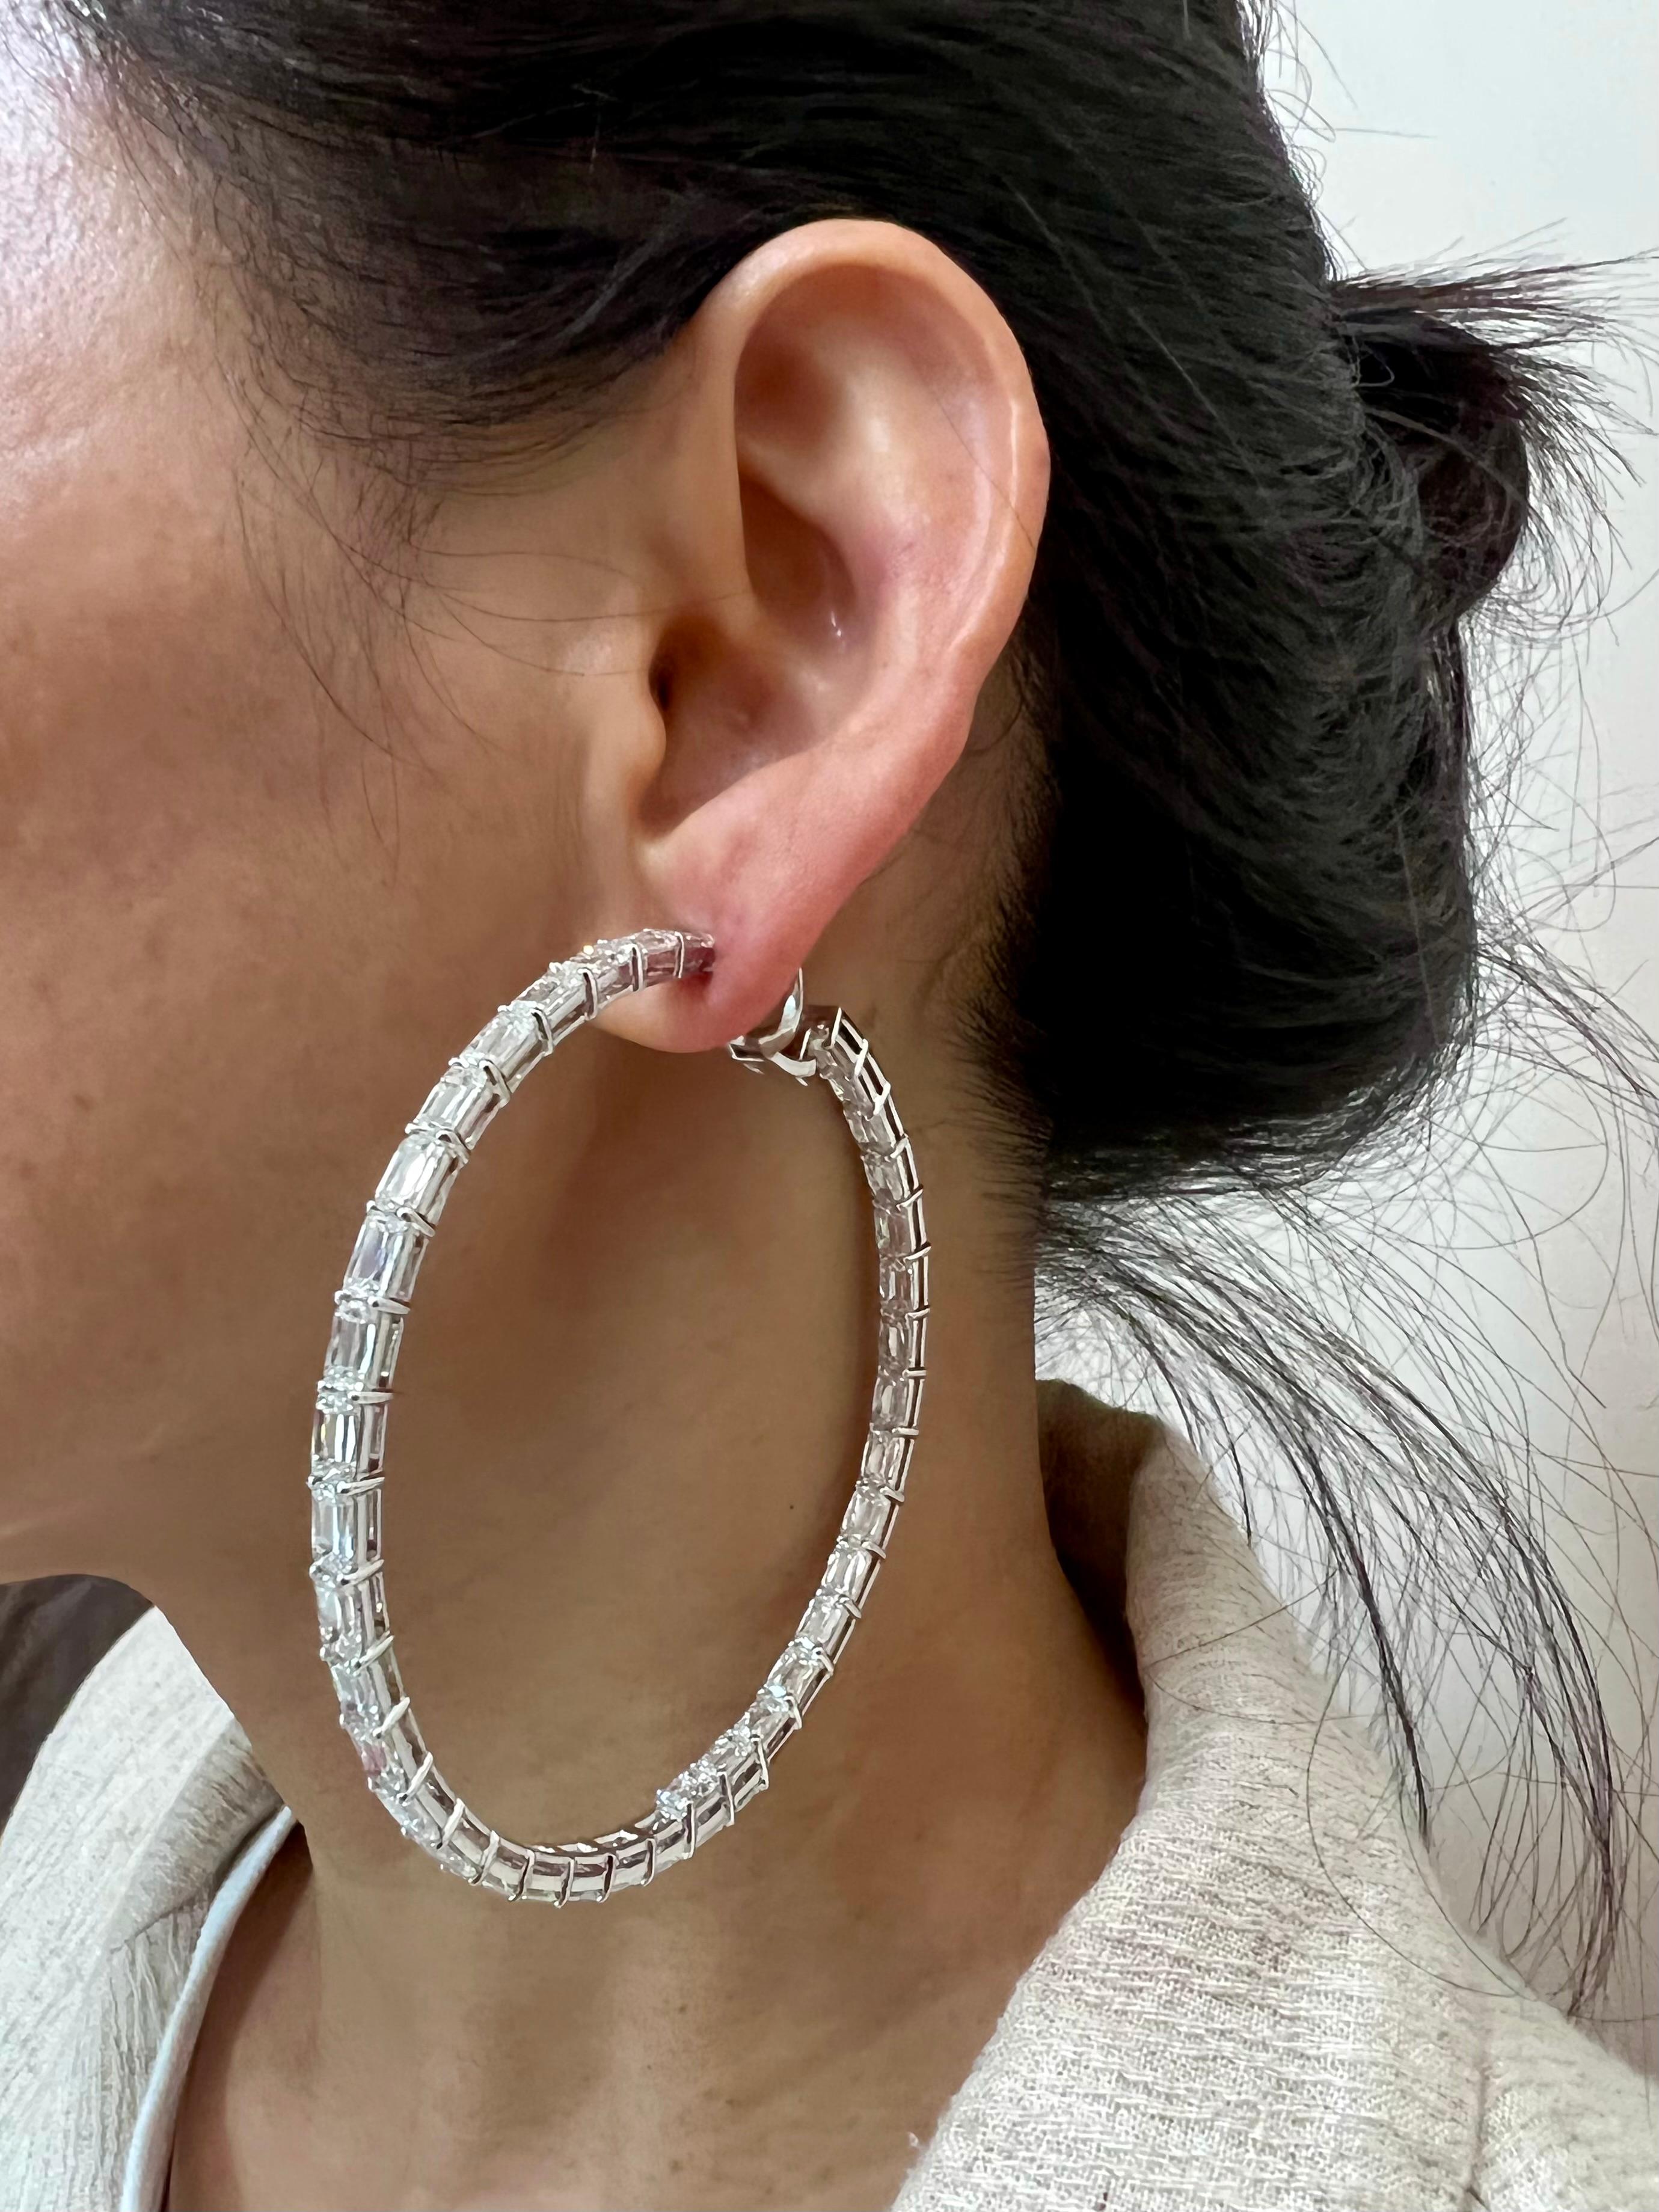 Veuillez consulter la vidéo HD. Il s'agit d'une paire très spéciale de boucles d'oreilles en diamant. Il a fallu beaucoup de temps pour assortir et assembler ces impressionnantes boucles d'oreilles. 78 diamants taille Ashoka certifiés GIA sont